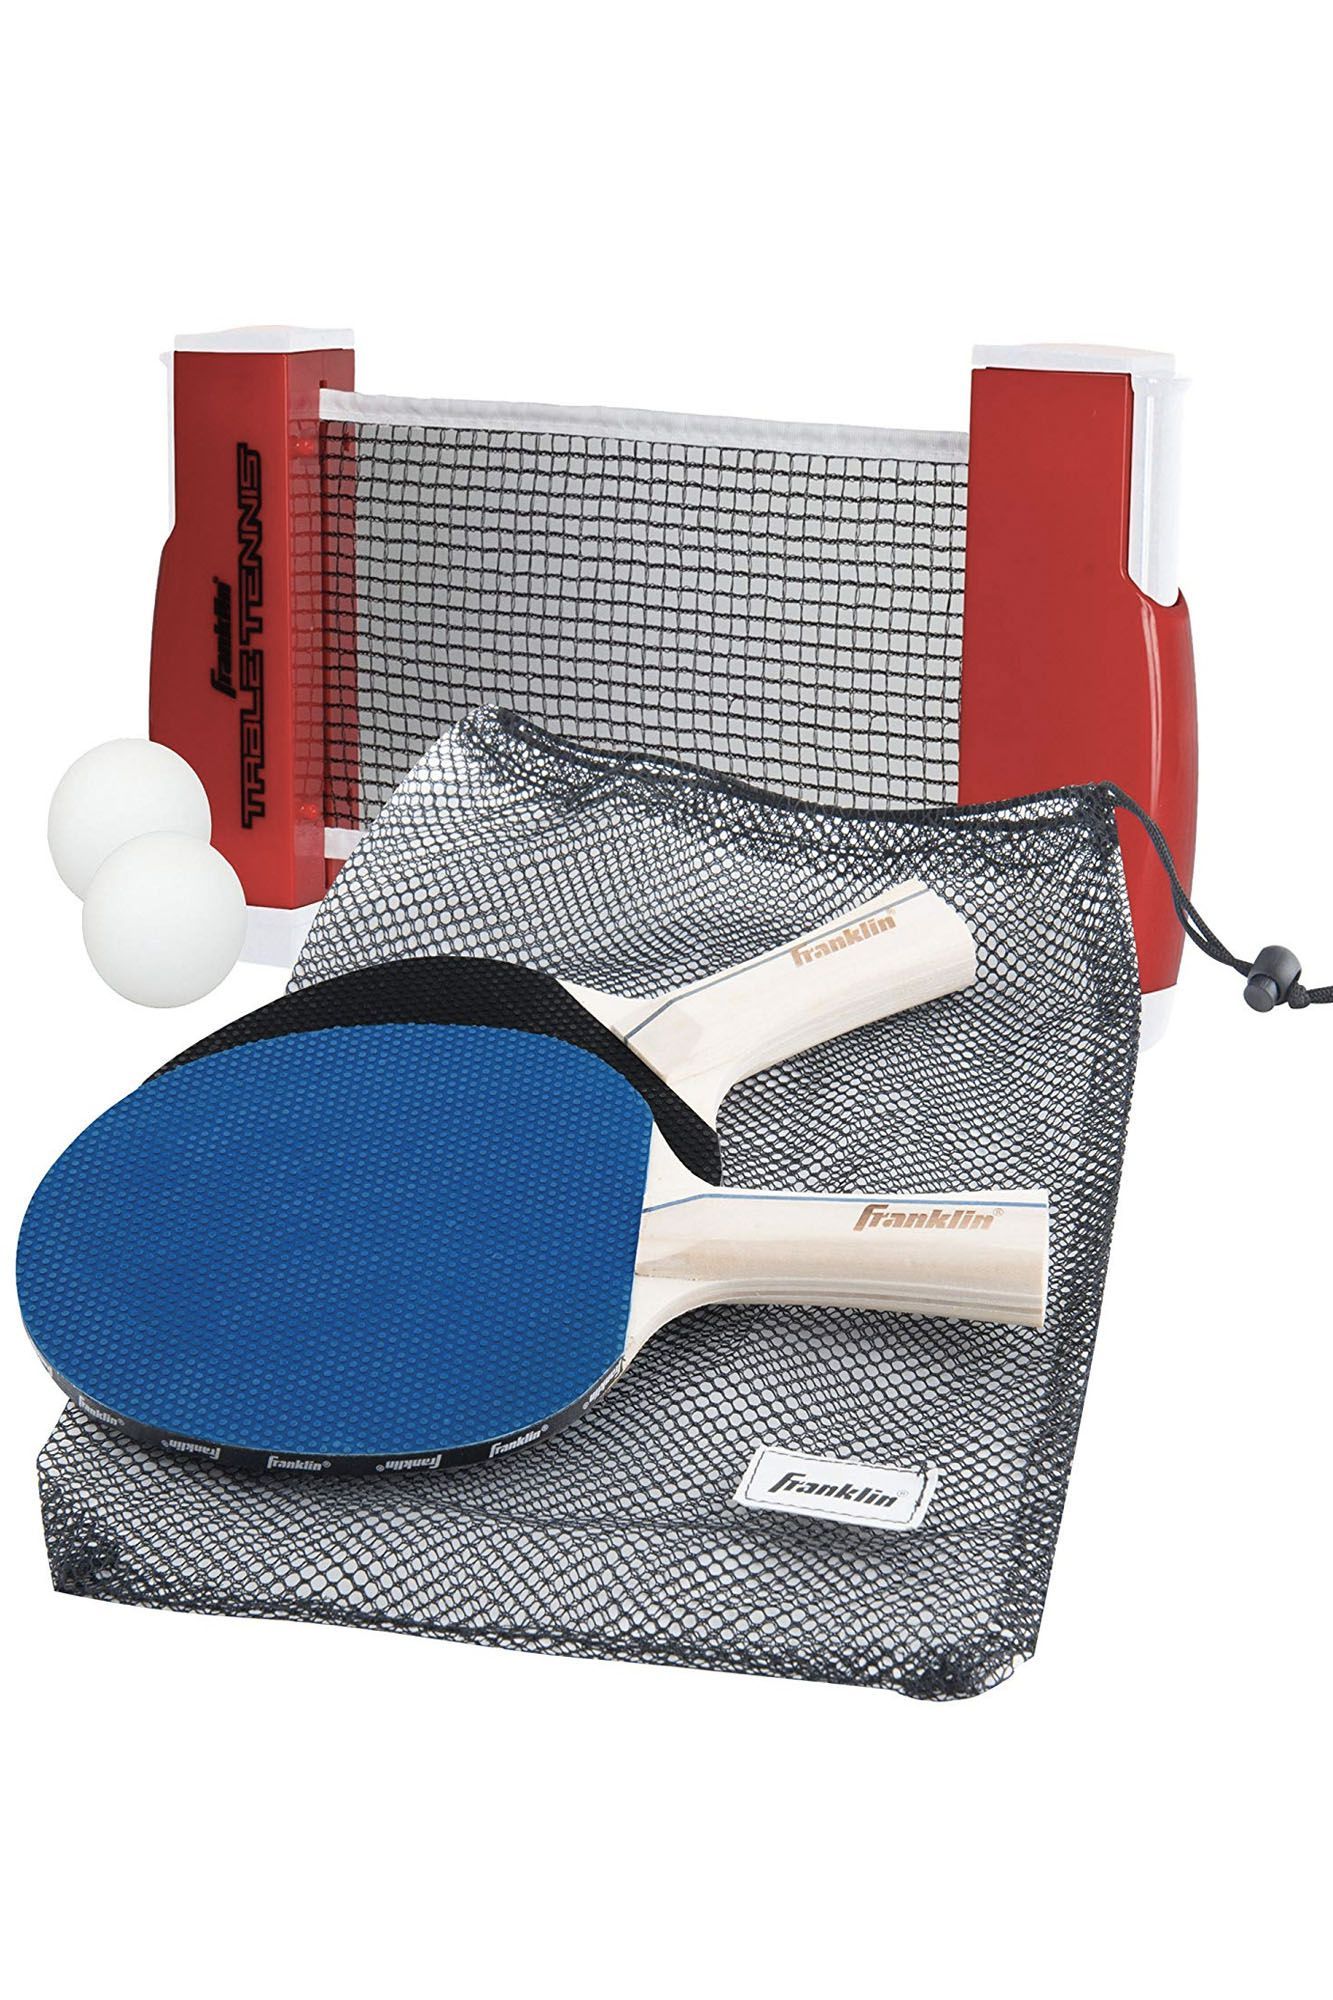 Стол теннис ракетка. ARTENGO 700 ракетка для настольного тенниса. Набор д/настольного тенниса (ракетка 2шт,шар 3шт). Набор для настольный теннис Ping - Pong. Ракетка настольного тенниса start Level 200.